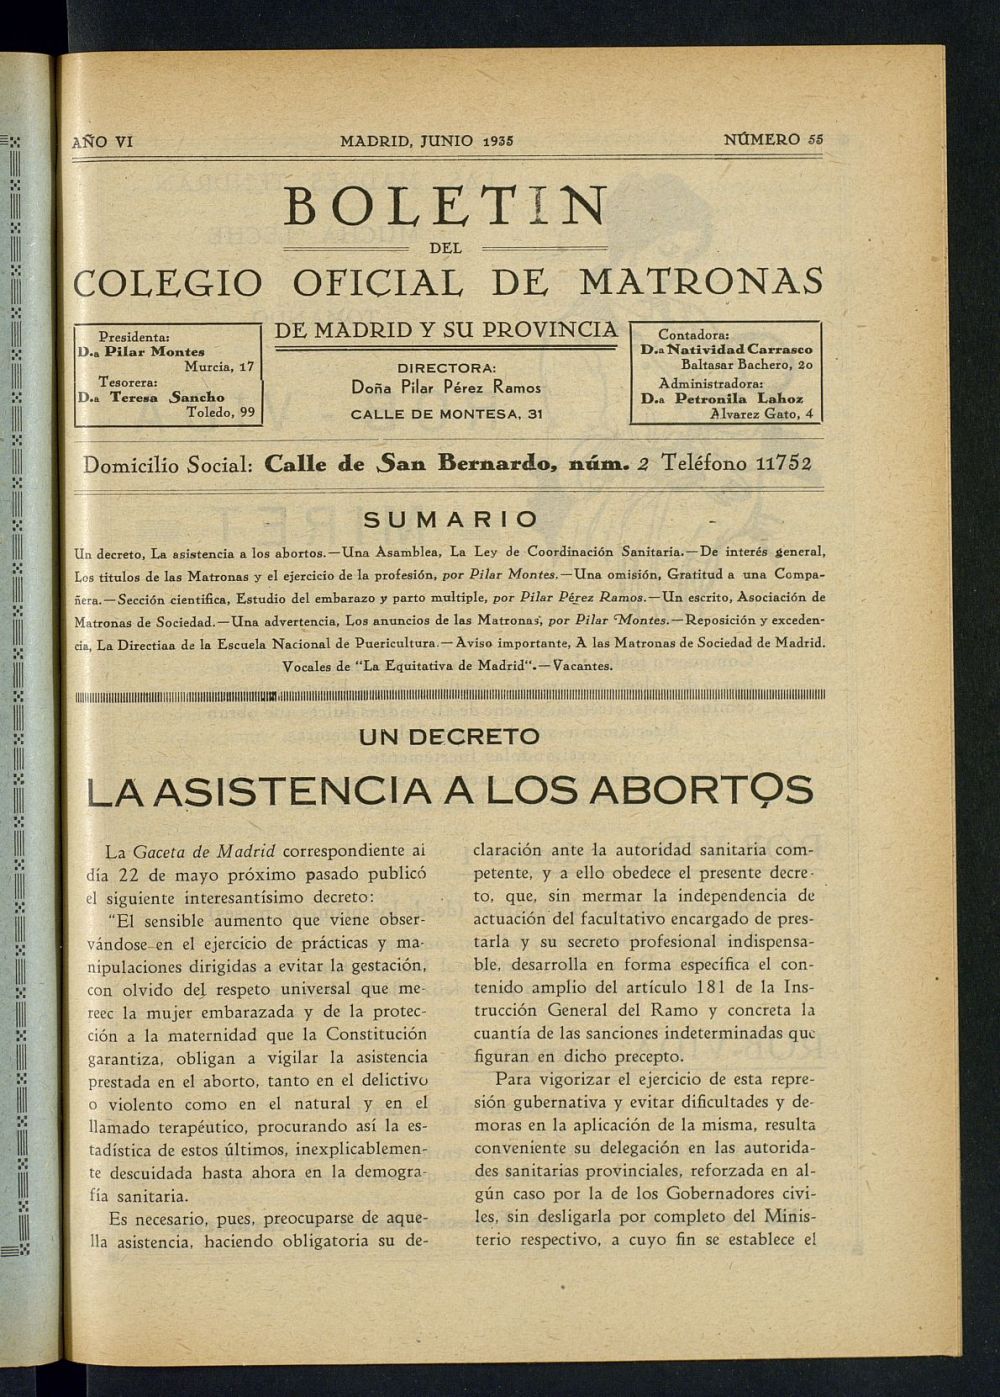 Boletn del Colegio Oficial de Matronas de Madrid y su Provincia de junio de 1935